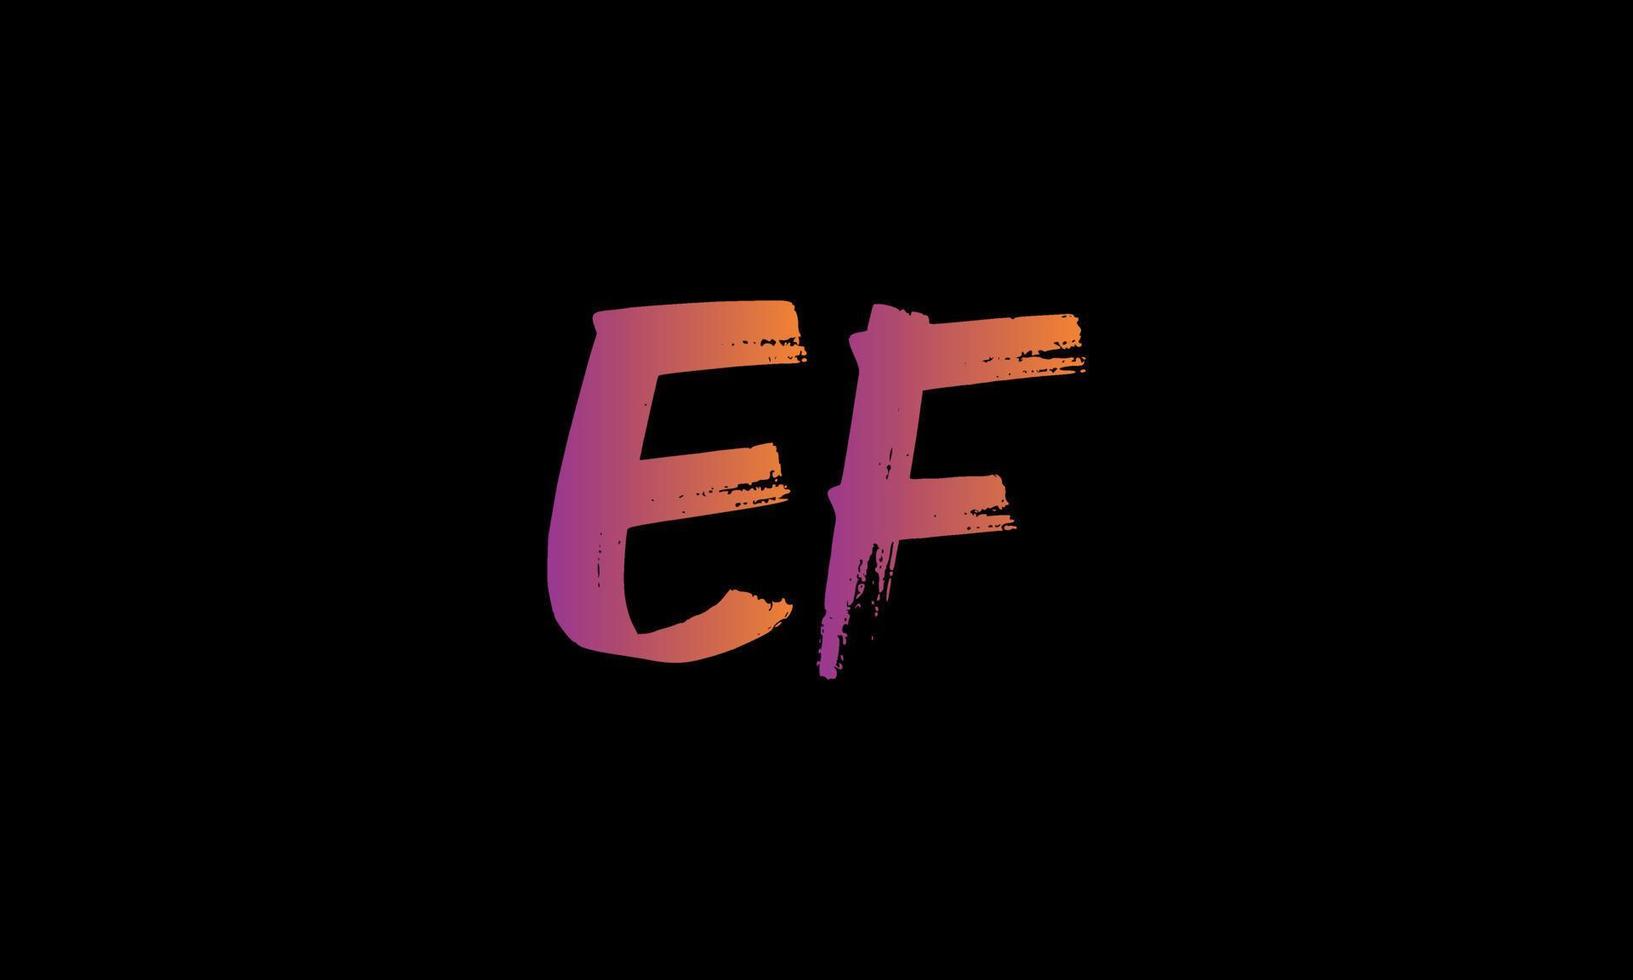 Anfangsbuchstabe ef-Logo. ef-Bürstenbuchstabe Logo Design kostenlose Vektordatei. vektor